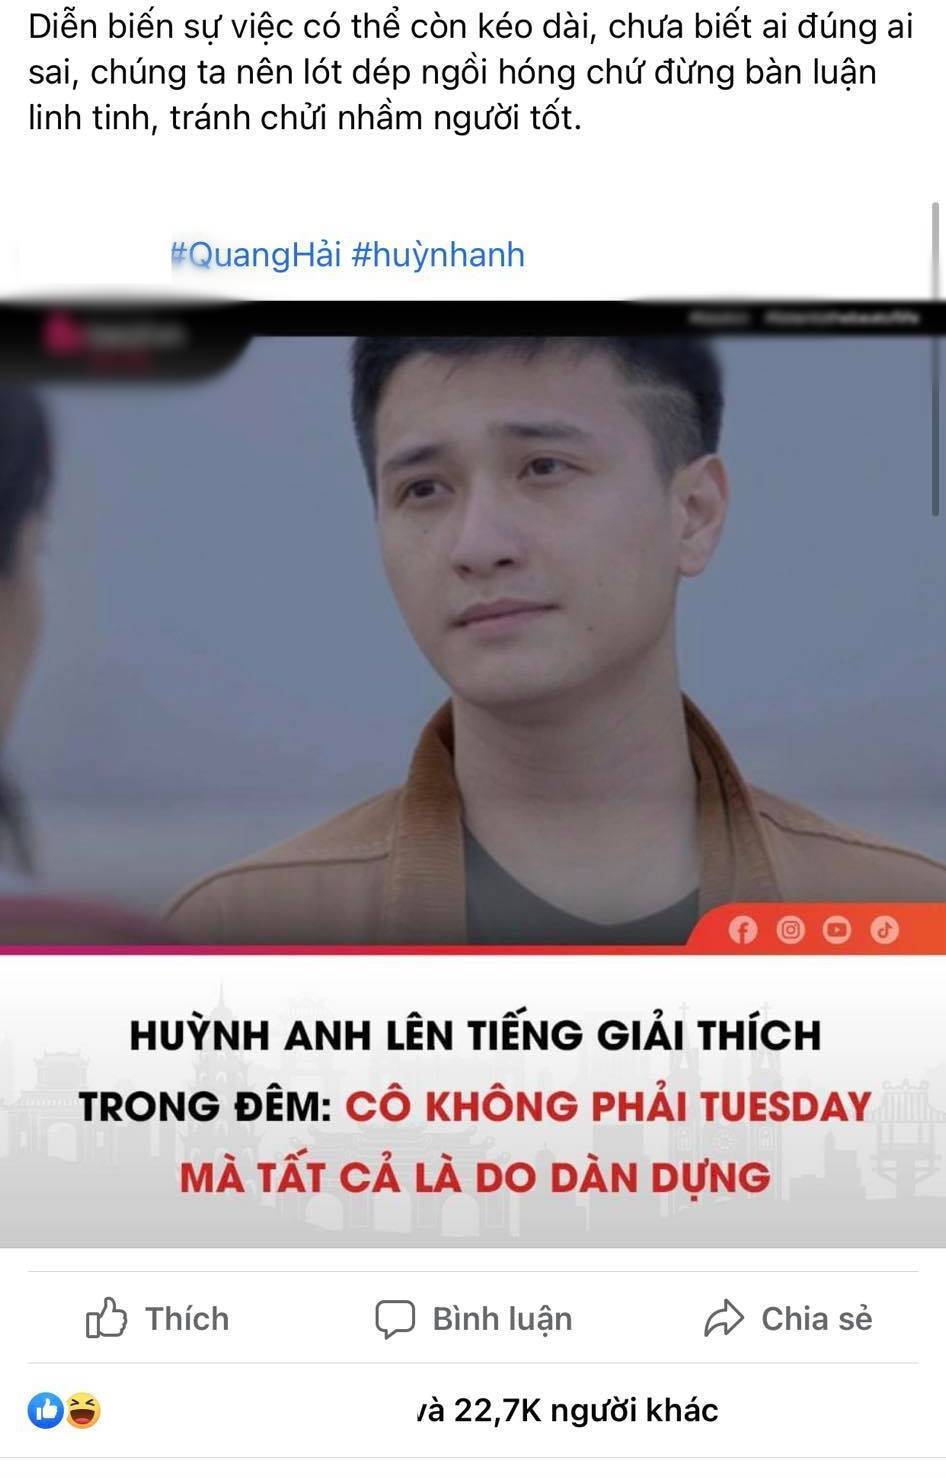  
Hình ảnh Huỳnh Anh xuất hiện trên một diễn đàn khi nói về chuyện tình cảm của Quang Hải. (Ảnh: Chụp màn hình)